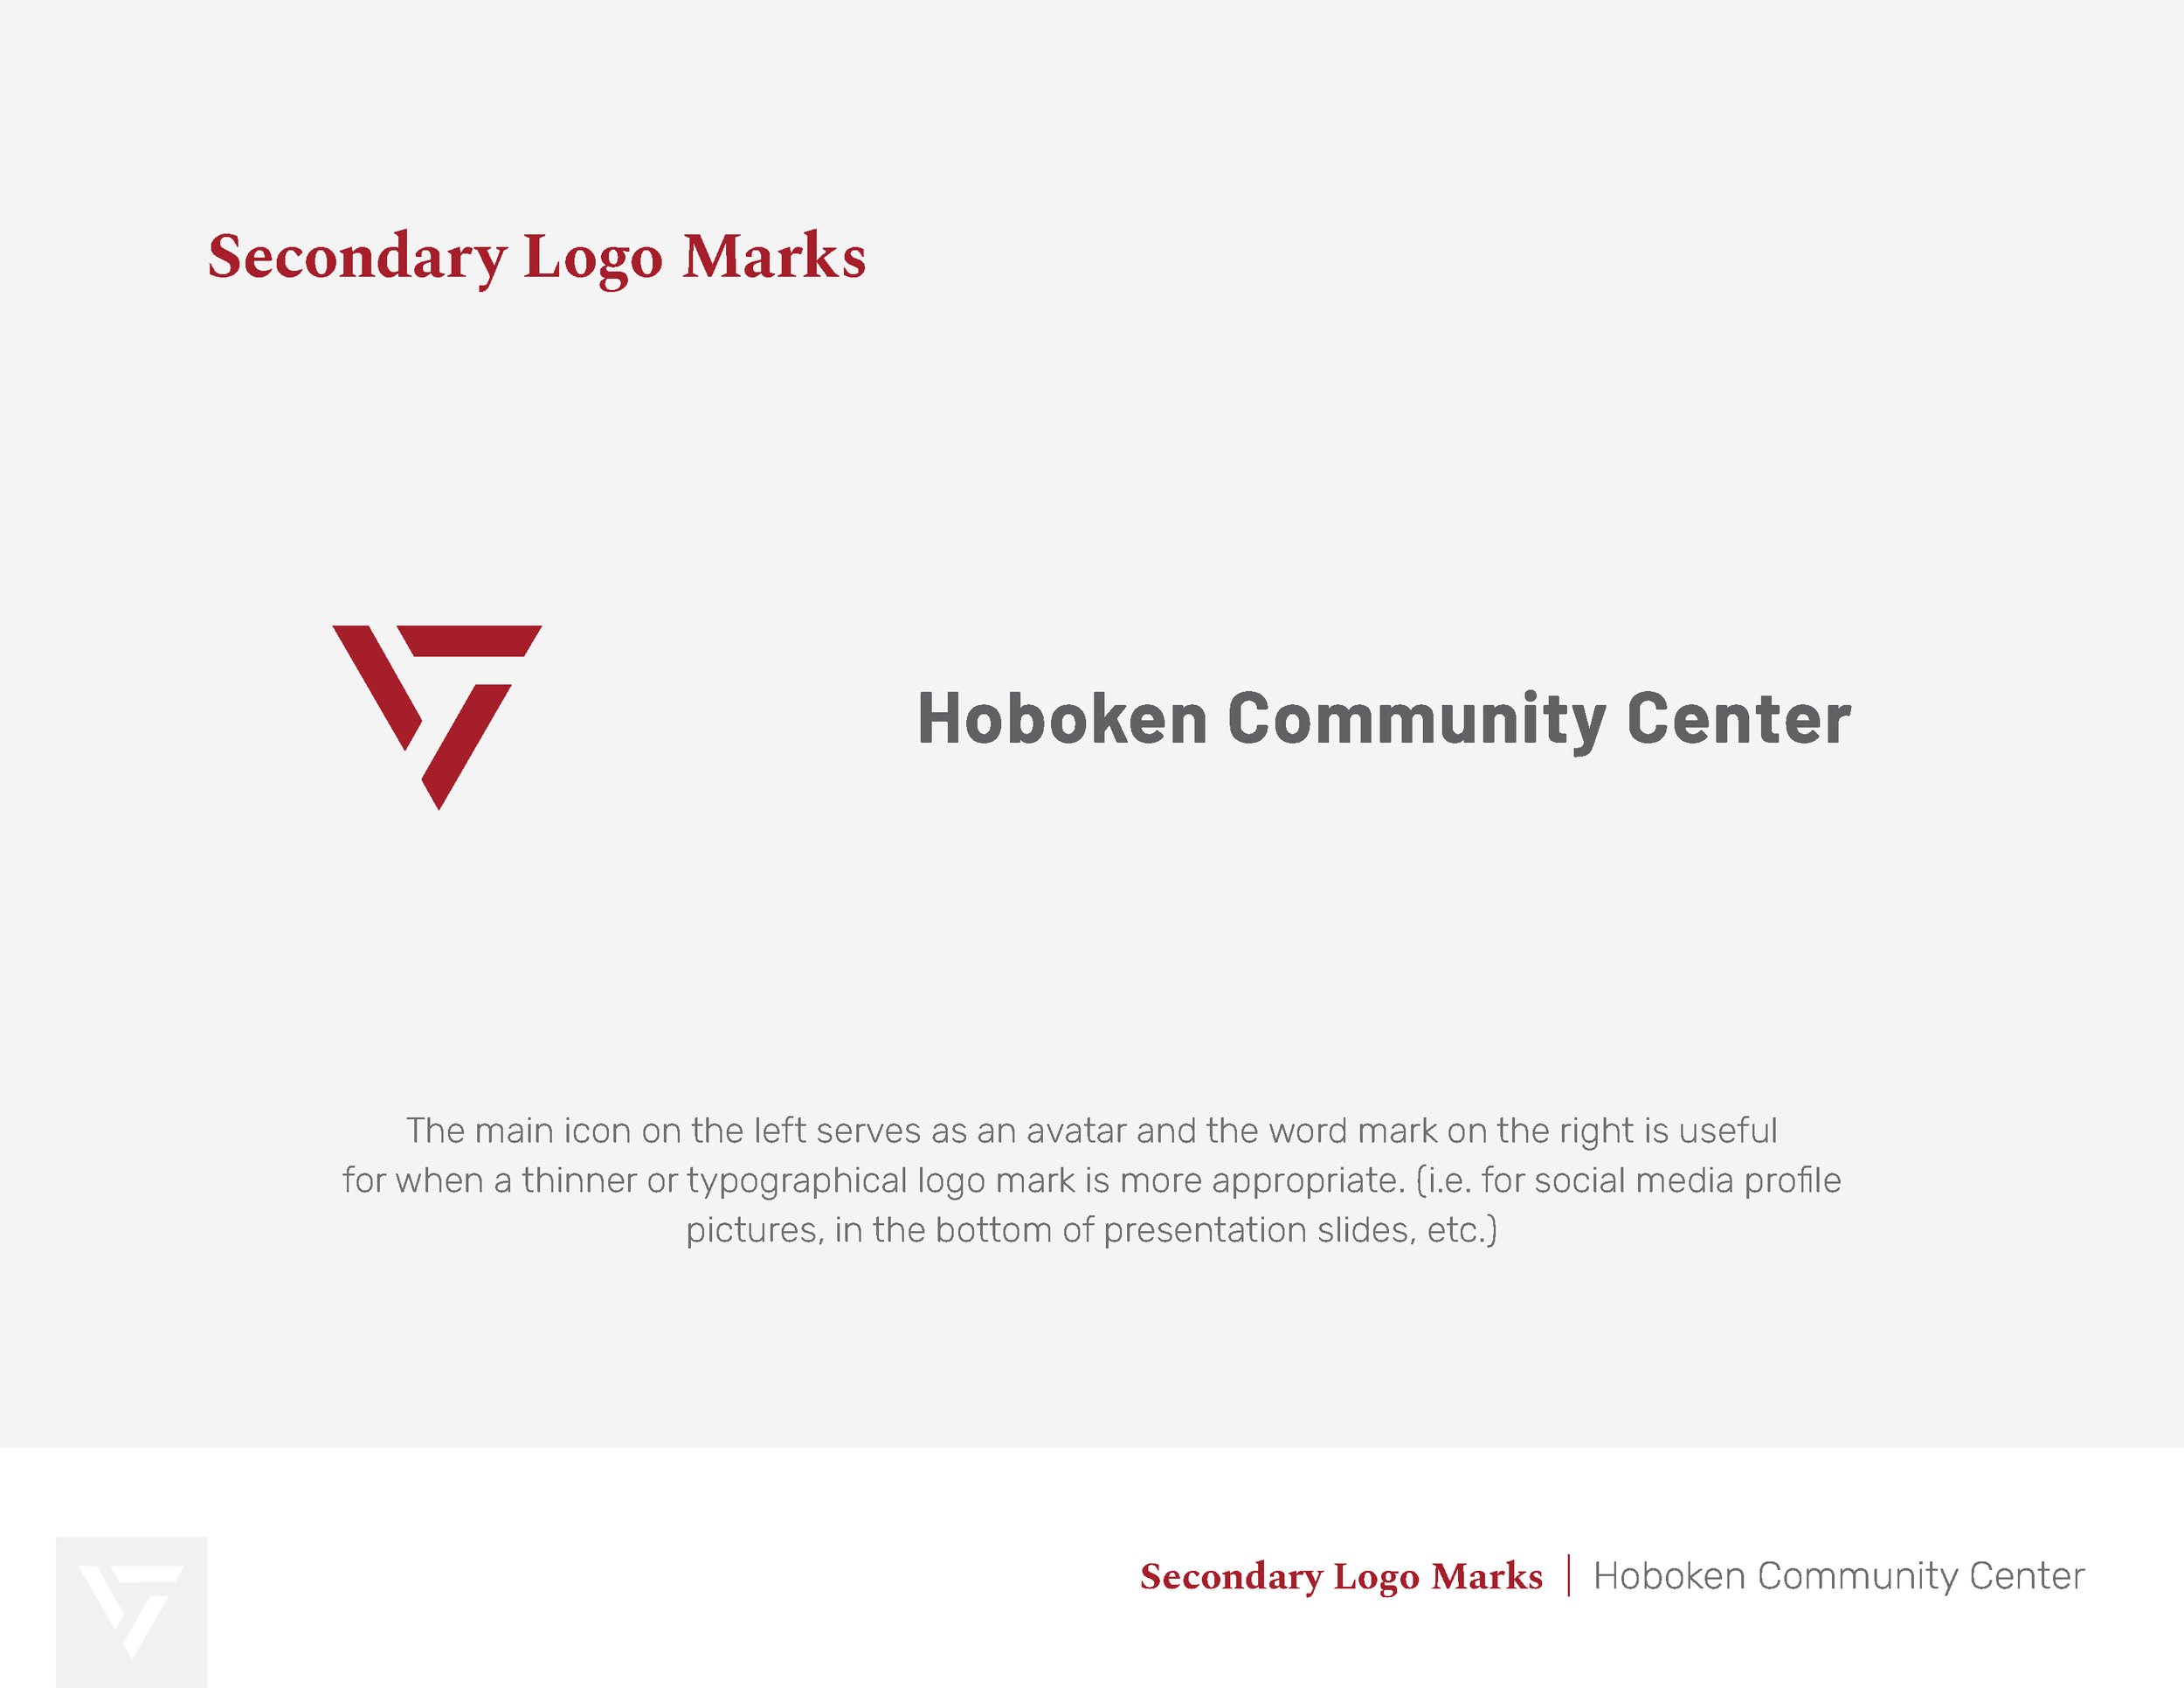 Hoboken Community Center Secondary Logo Design